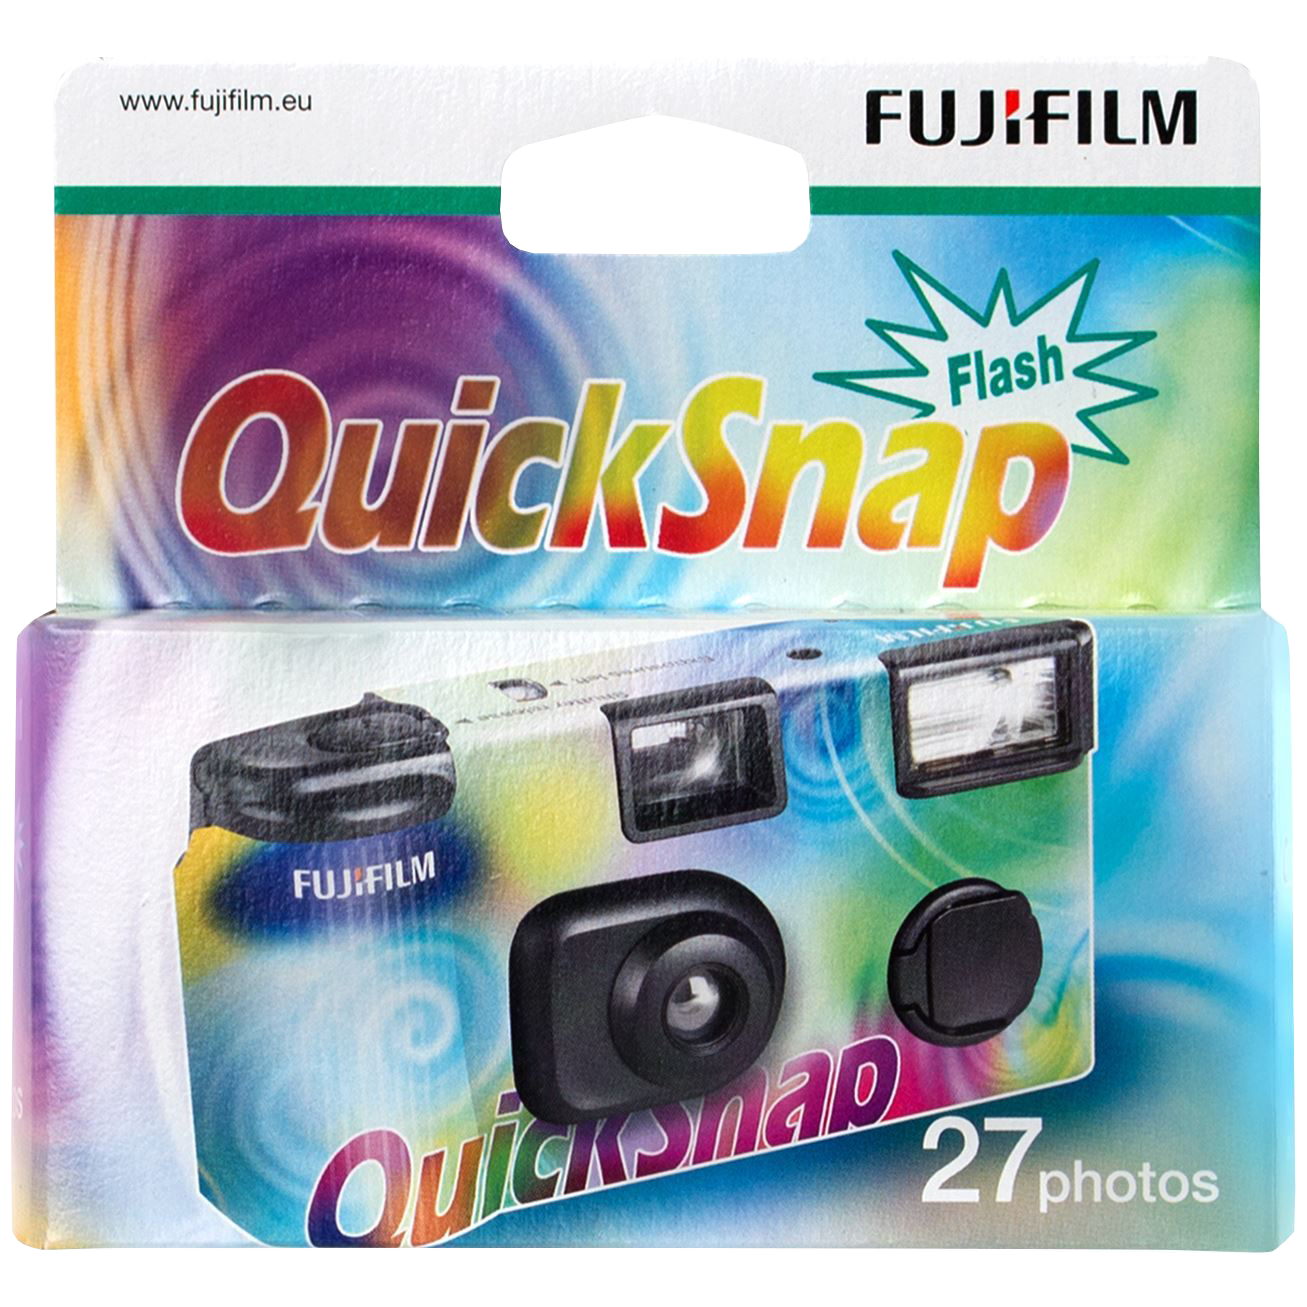 Bilde av Fujifilm Quicksnap m/blits, engangskamera -27 bilder